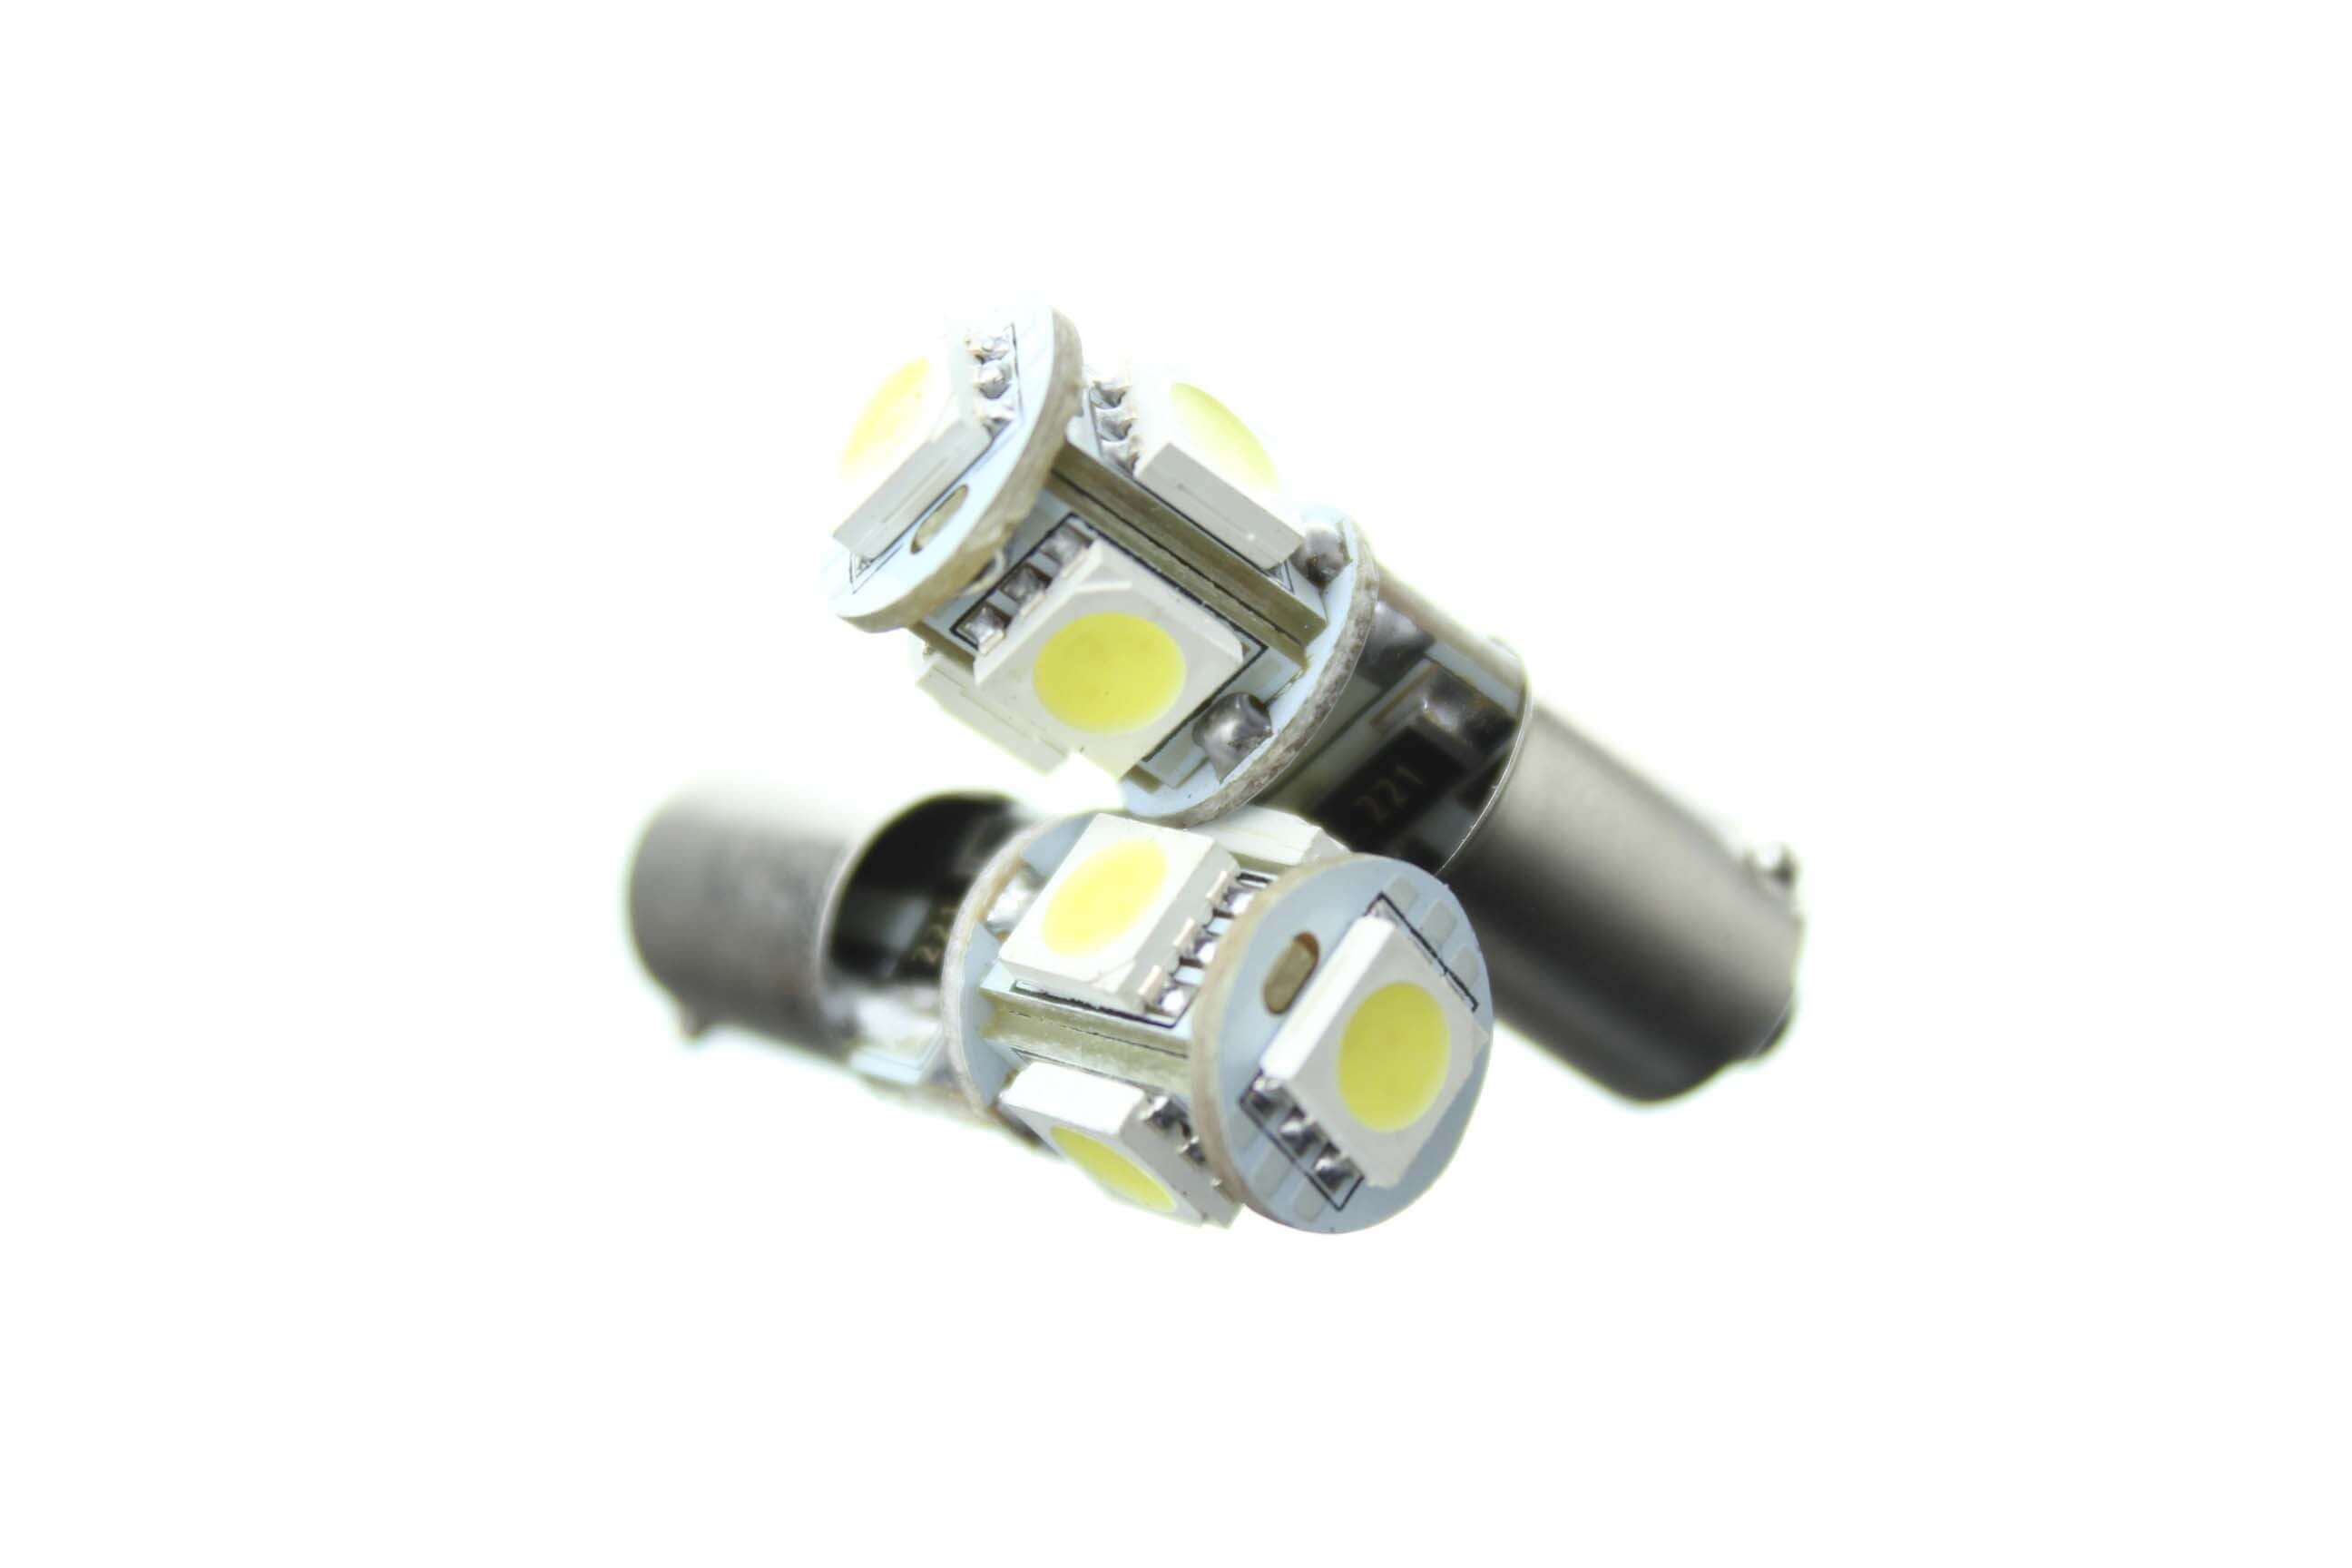 Aharon AvantiLED LED headlight bulb